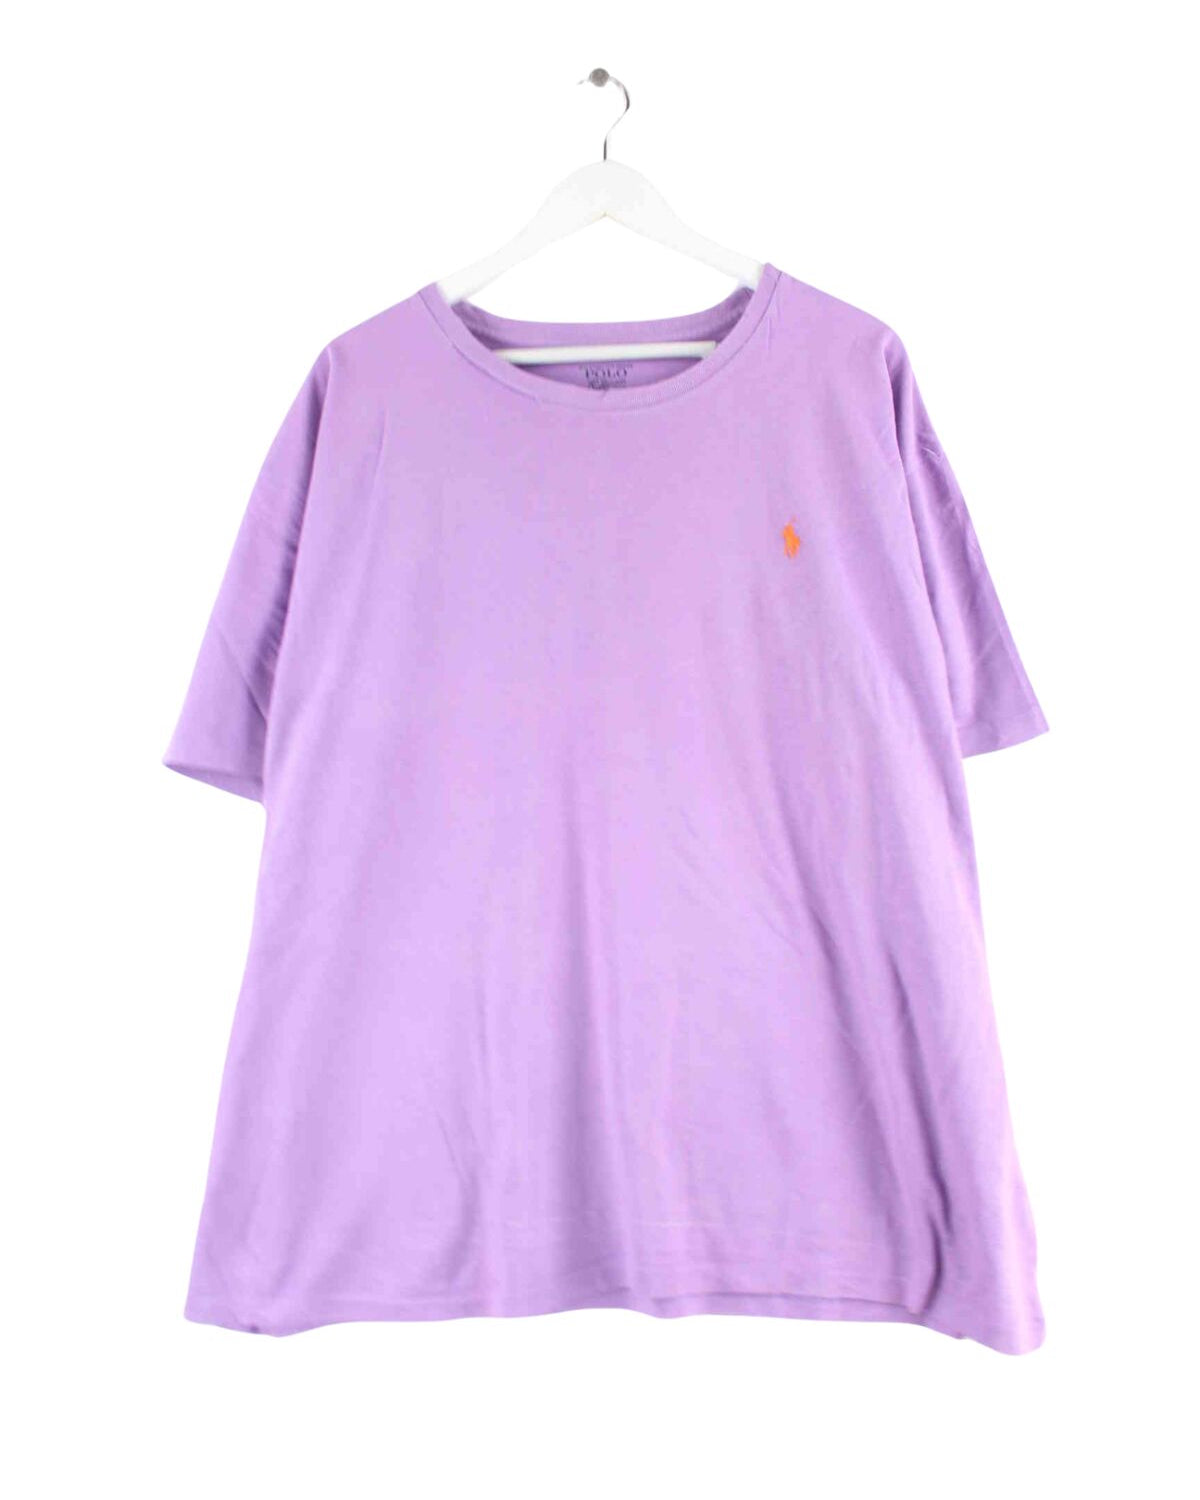 Ralph Lauren Basic T-Shirt Lila XXL (front image)